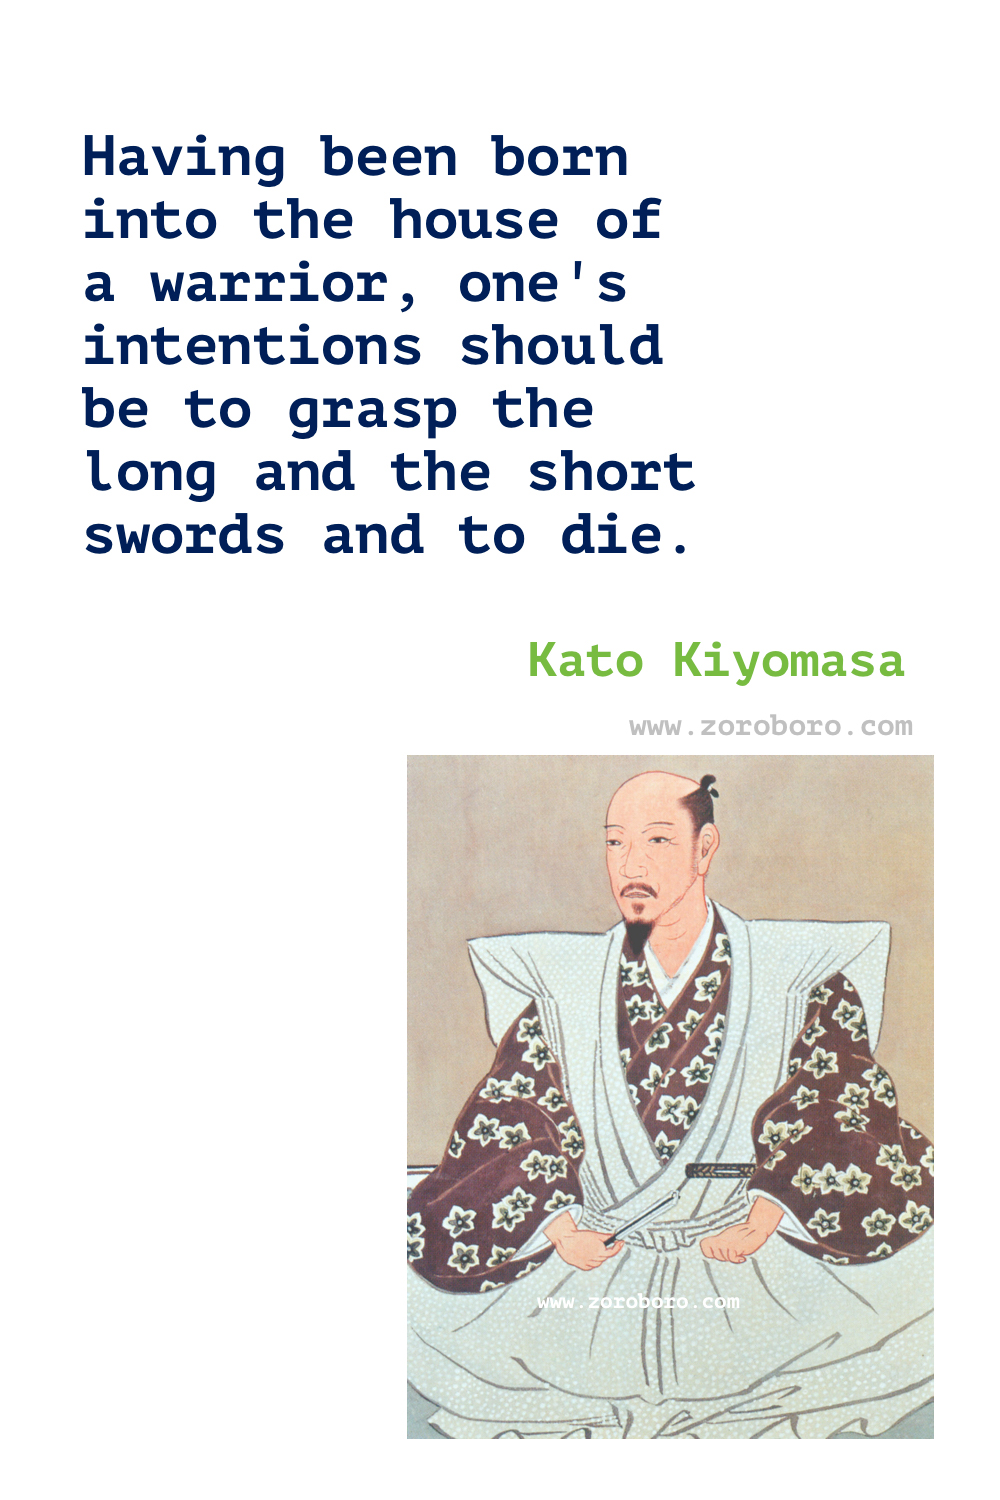 Kato Kiyomasa Quotes, Kato Kiyomasa Samrurai Quotes, Kato Kiyomasa Teachings, Kato Kiyomasa Quotes.